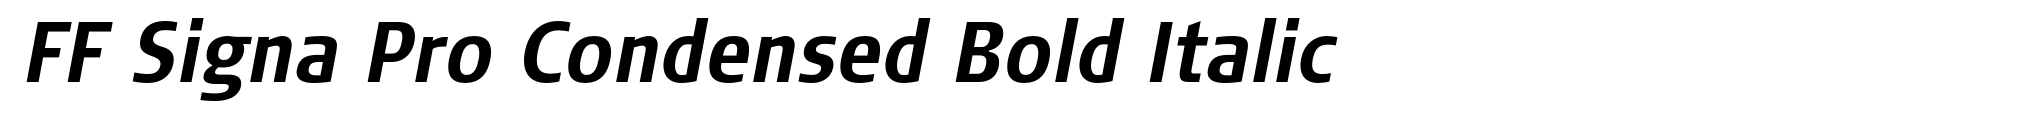 FF Signa Pro Condensed Bold Italic image